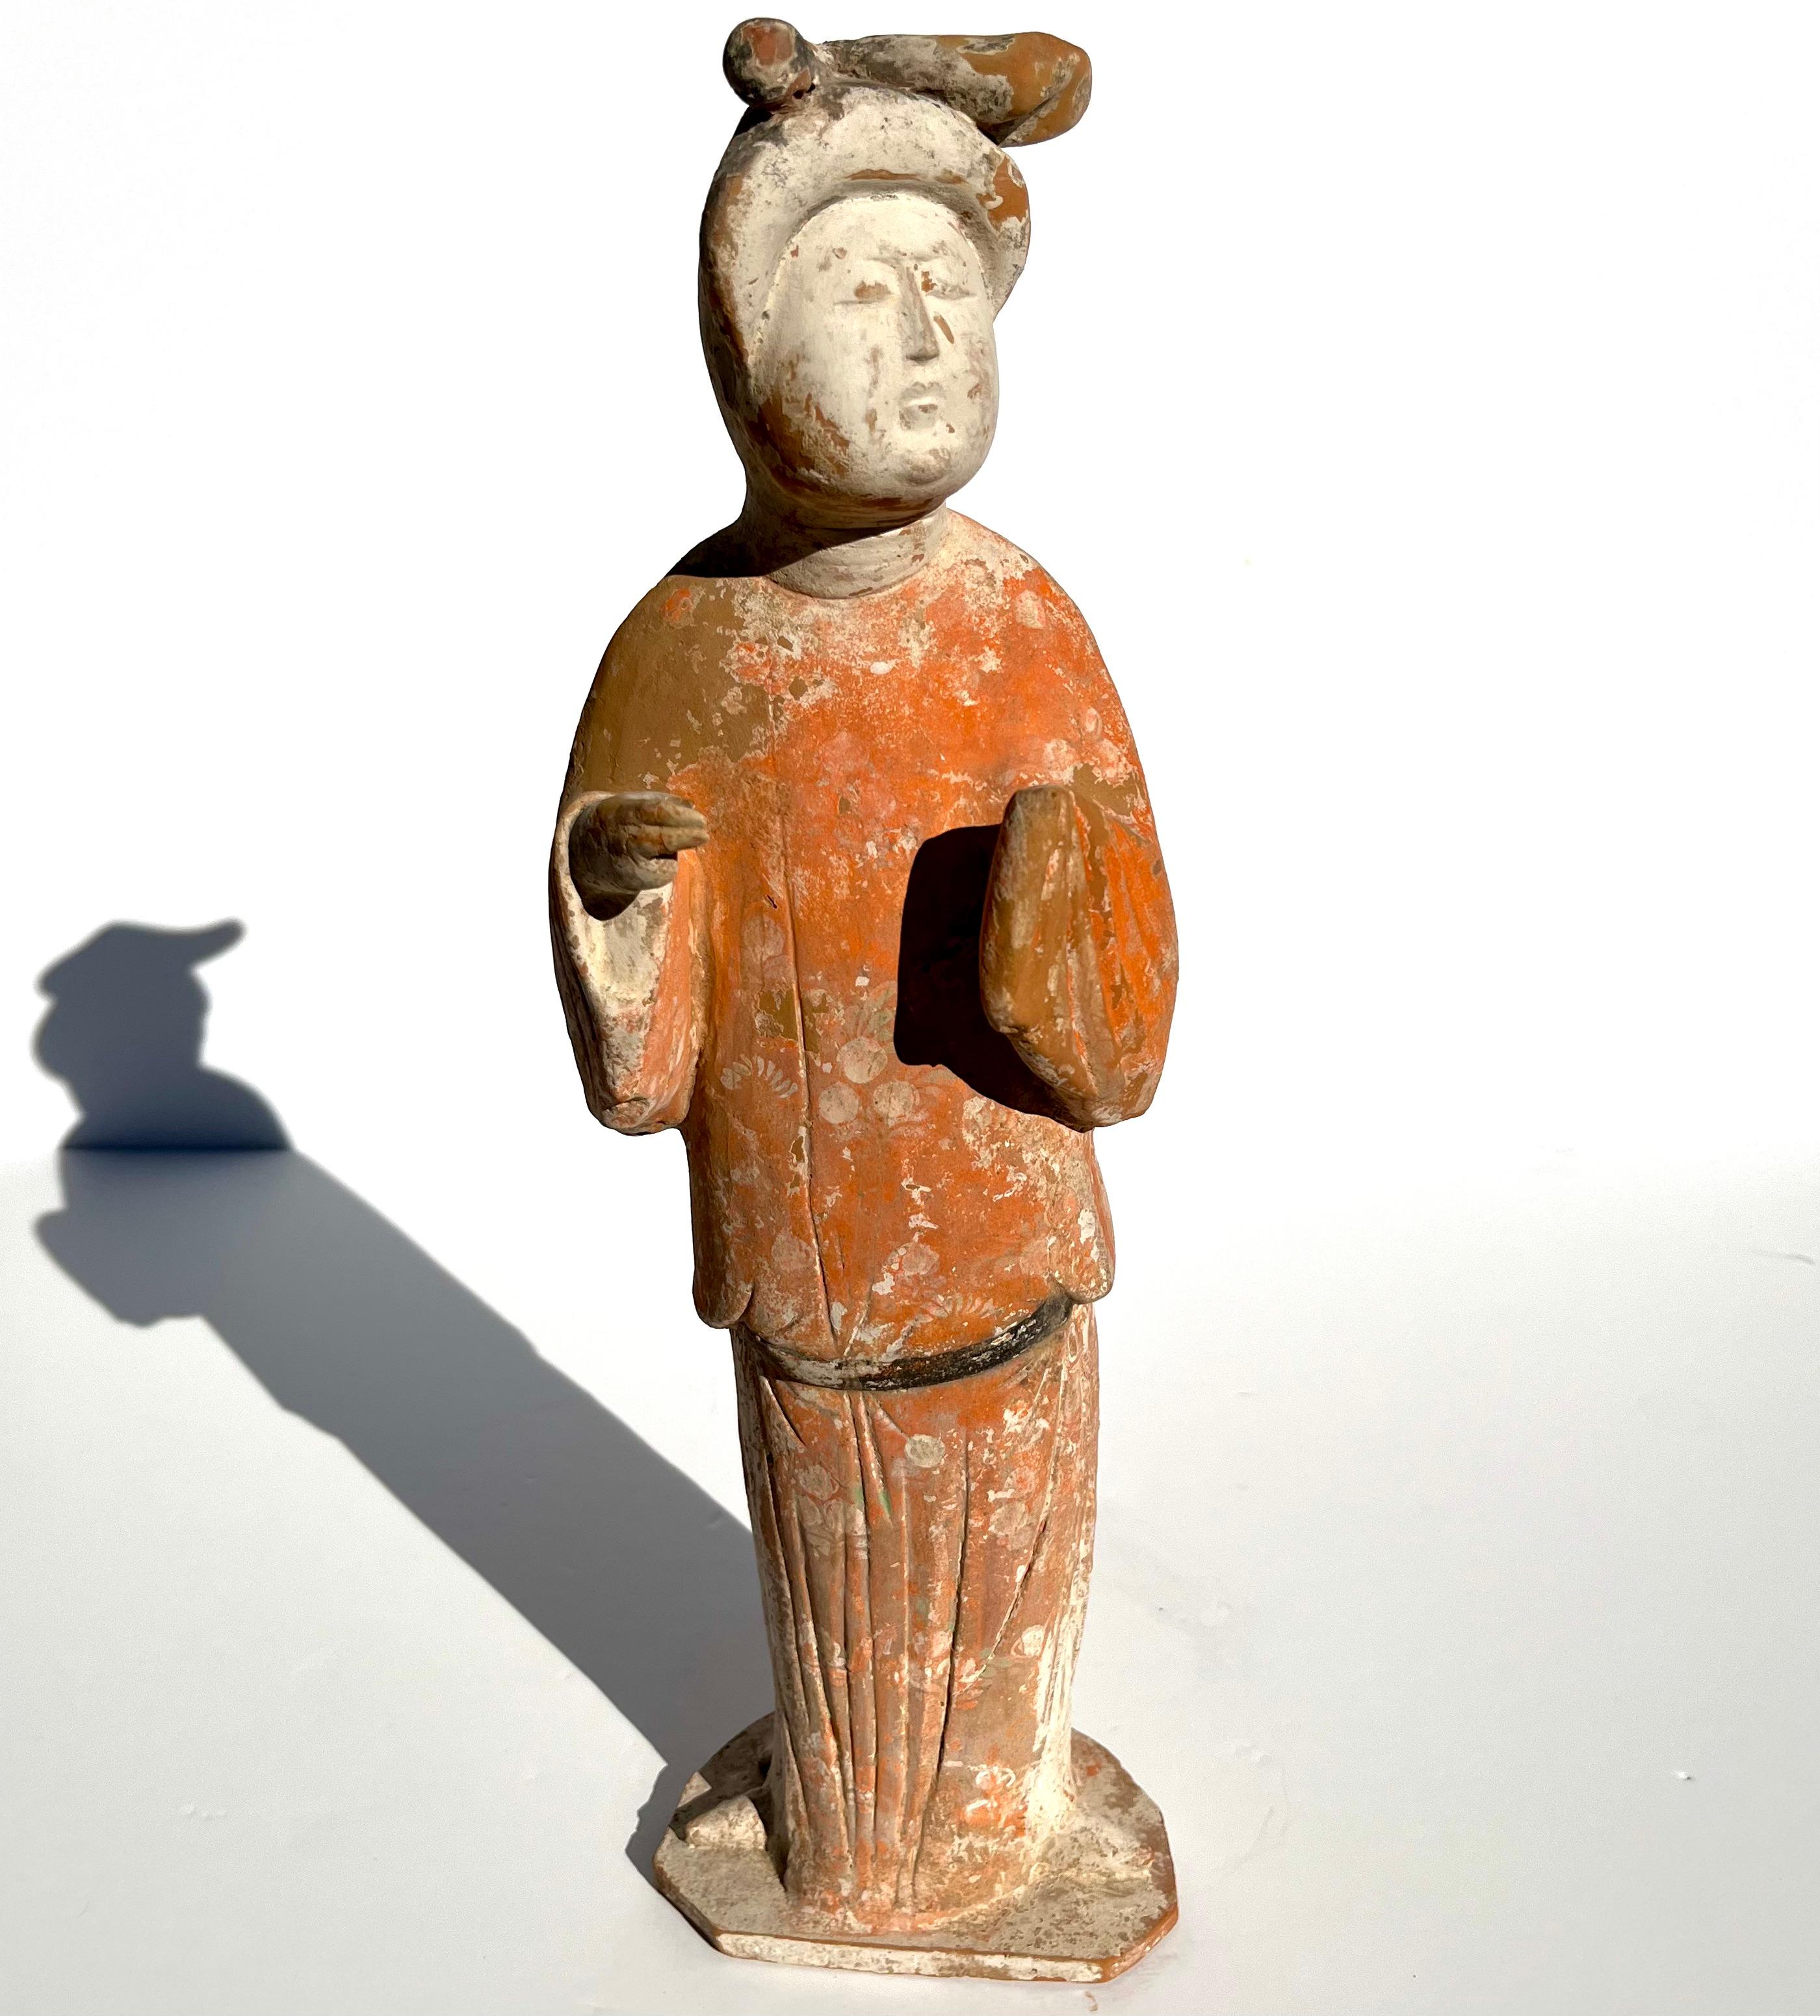 Figure en poterie peinte de la dynastie Tang représentant une grosse dame ou une courtisane.
Période (618 - 907AD)

Succession / Collectional : La Collectional de Jay I. Kislak vendue au profit de la Fondation de la famille Kislak

Une grosse dame